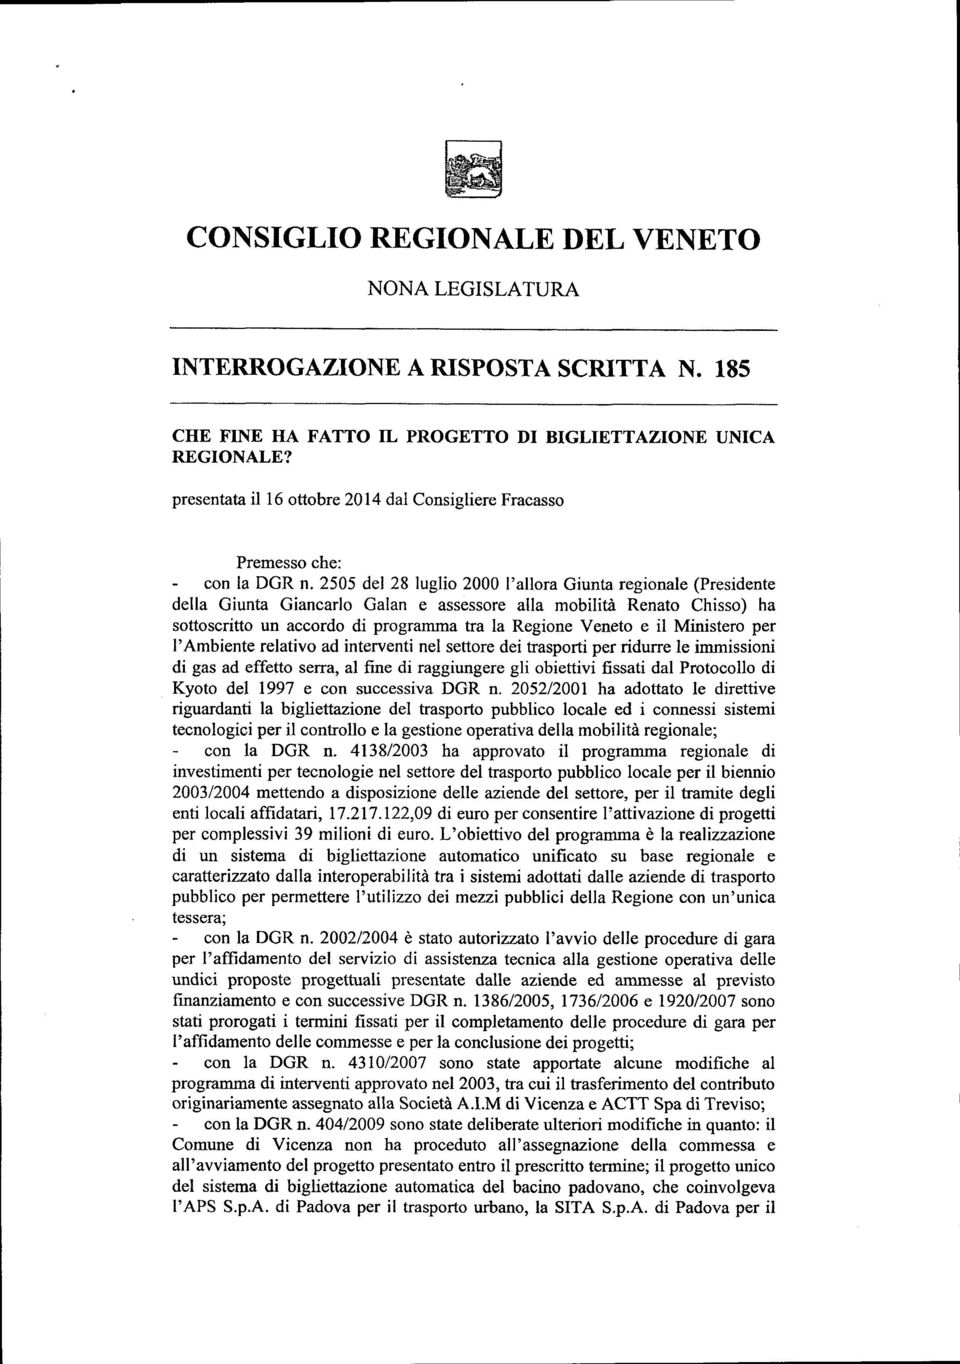 2505 del 28 luglio 2000 l'allora Giunta regionale (Presidente della Giunta Giancarlo Galan e assessore alla mobilità Renato Chisso) ha sottoscritto un accordo di programma tra la Regione Veneto e il